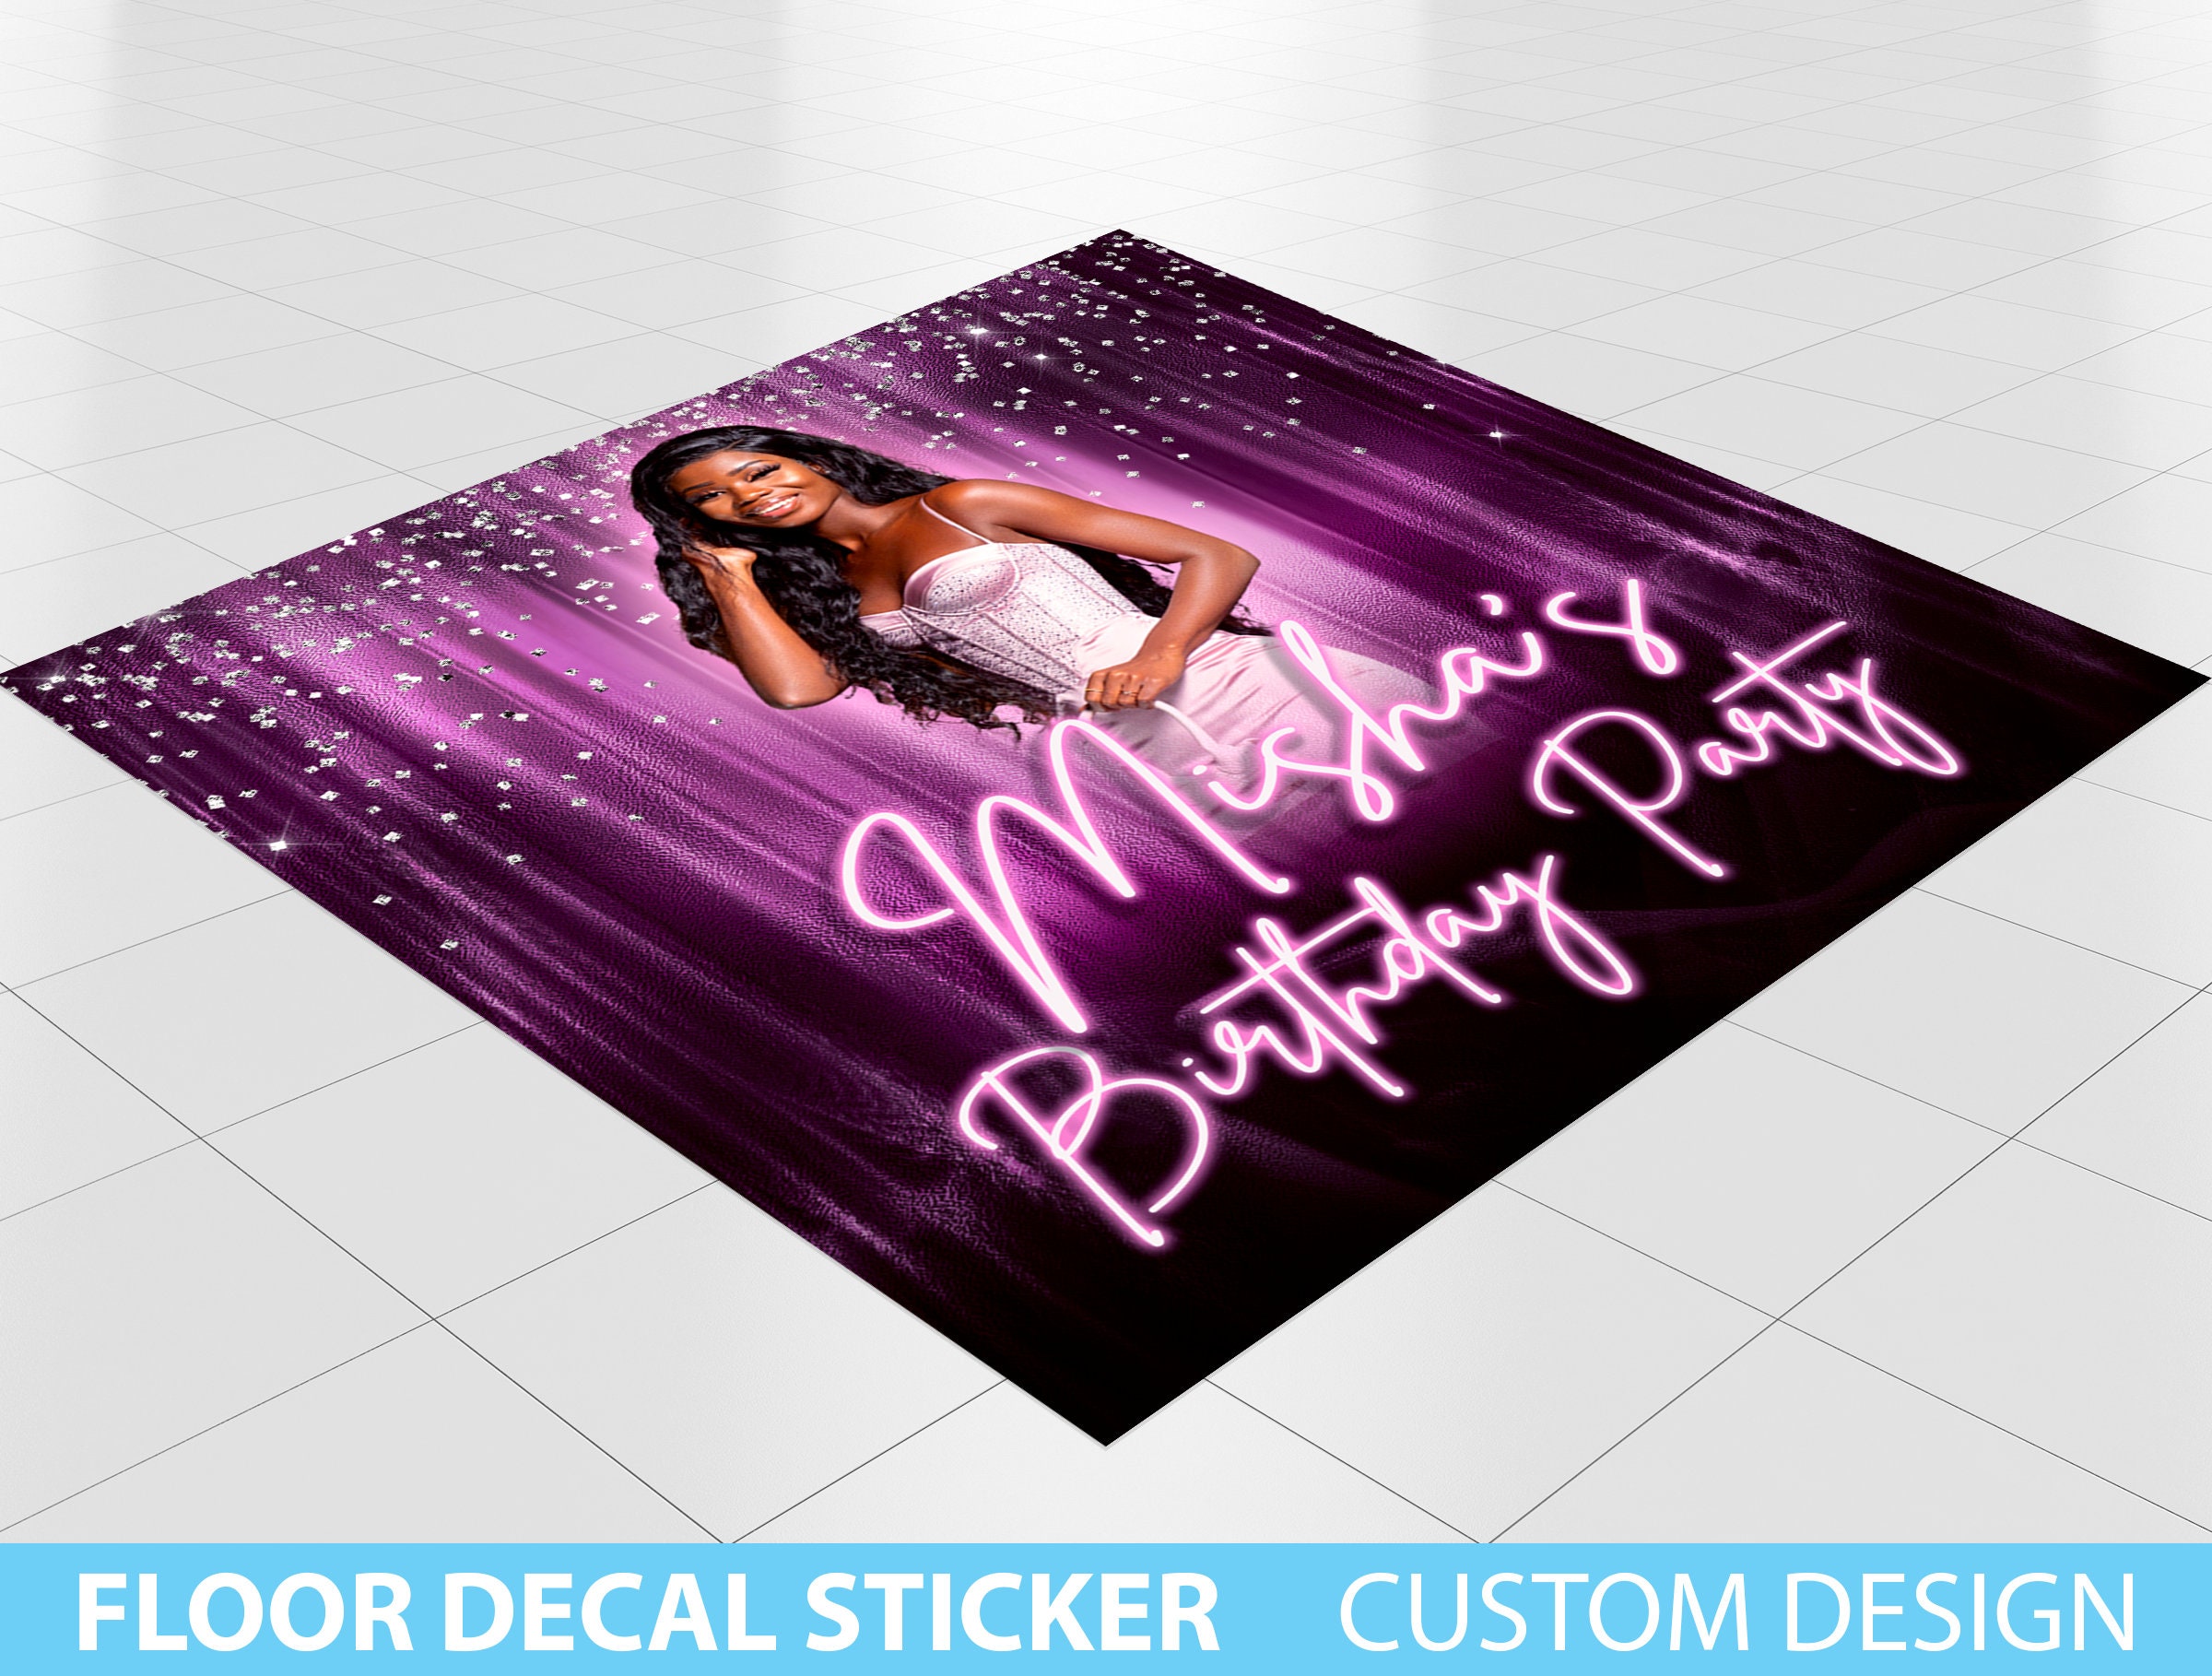 Floor Decals, Custom Floor Decals and Vinyl Stickers